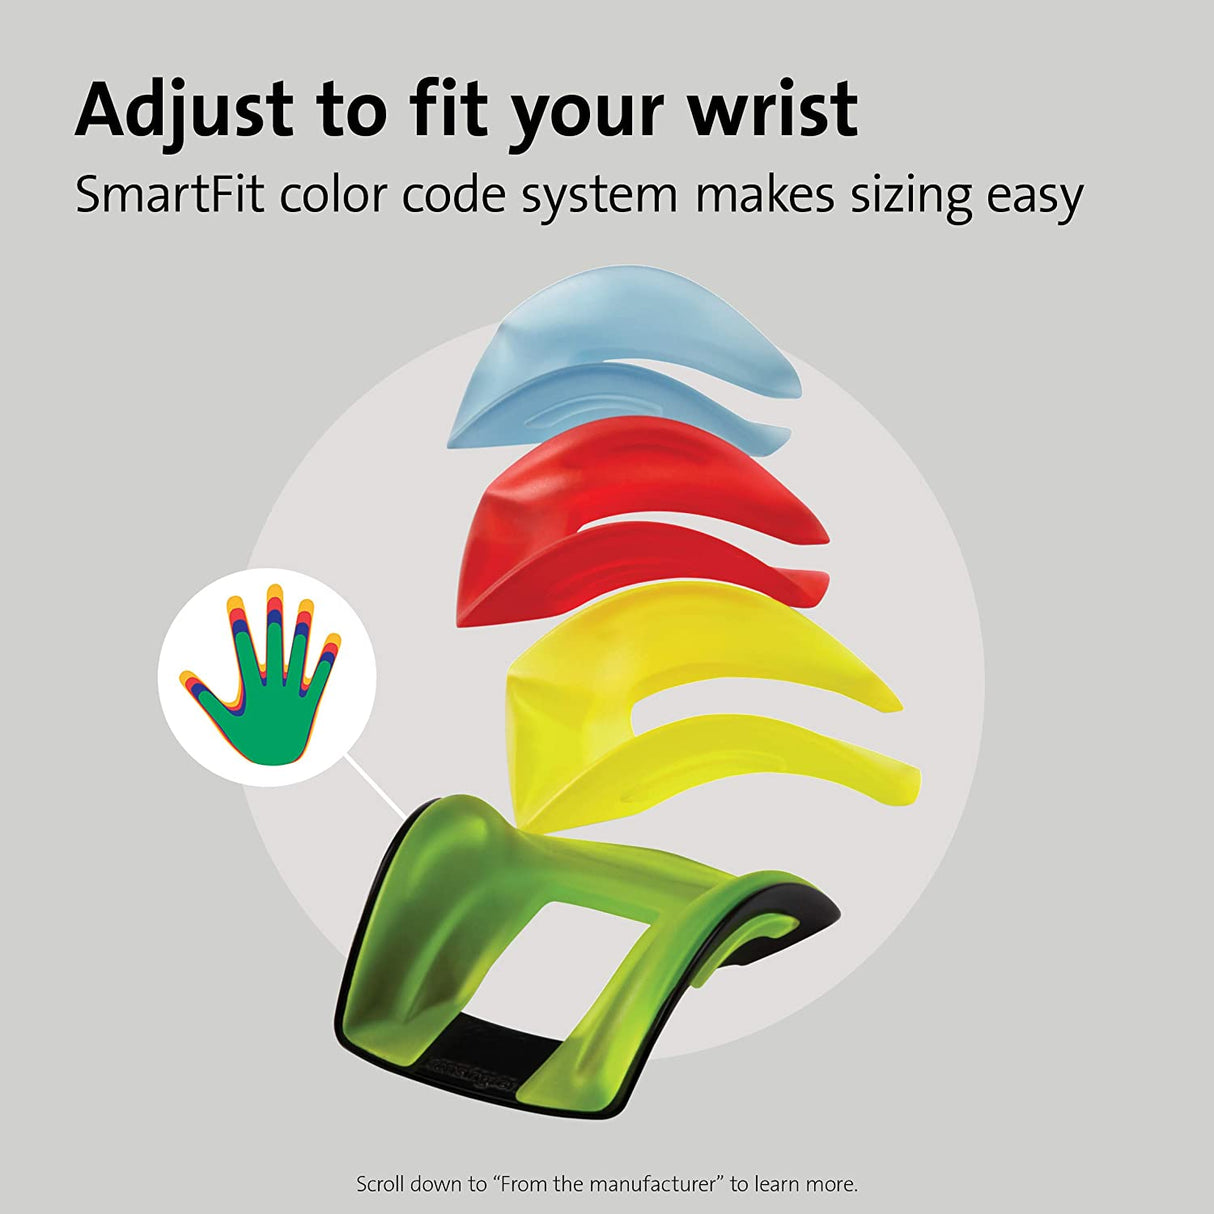 Kensington® Conform Wrist Rest, SmartFit®, Ergonomic Design (K55787US)